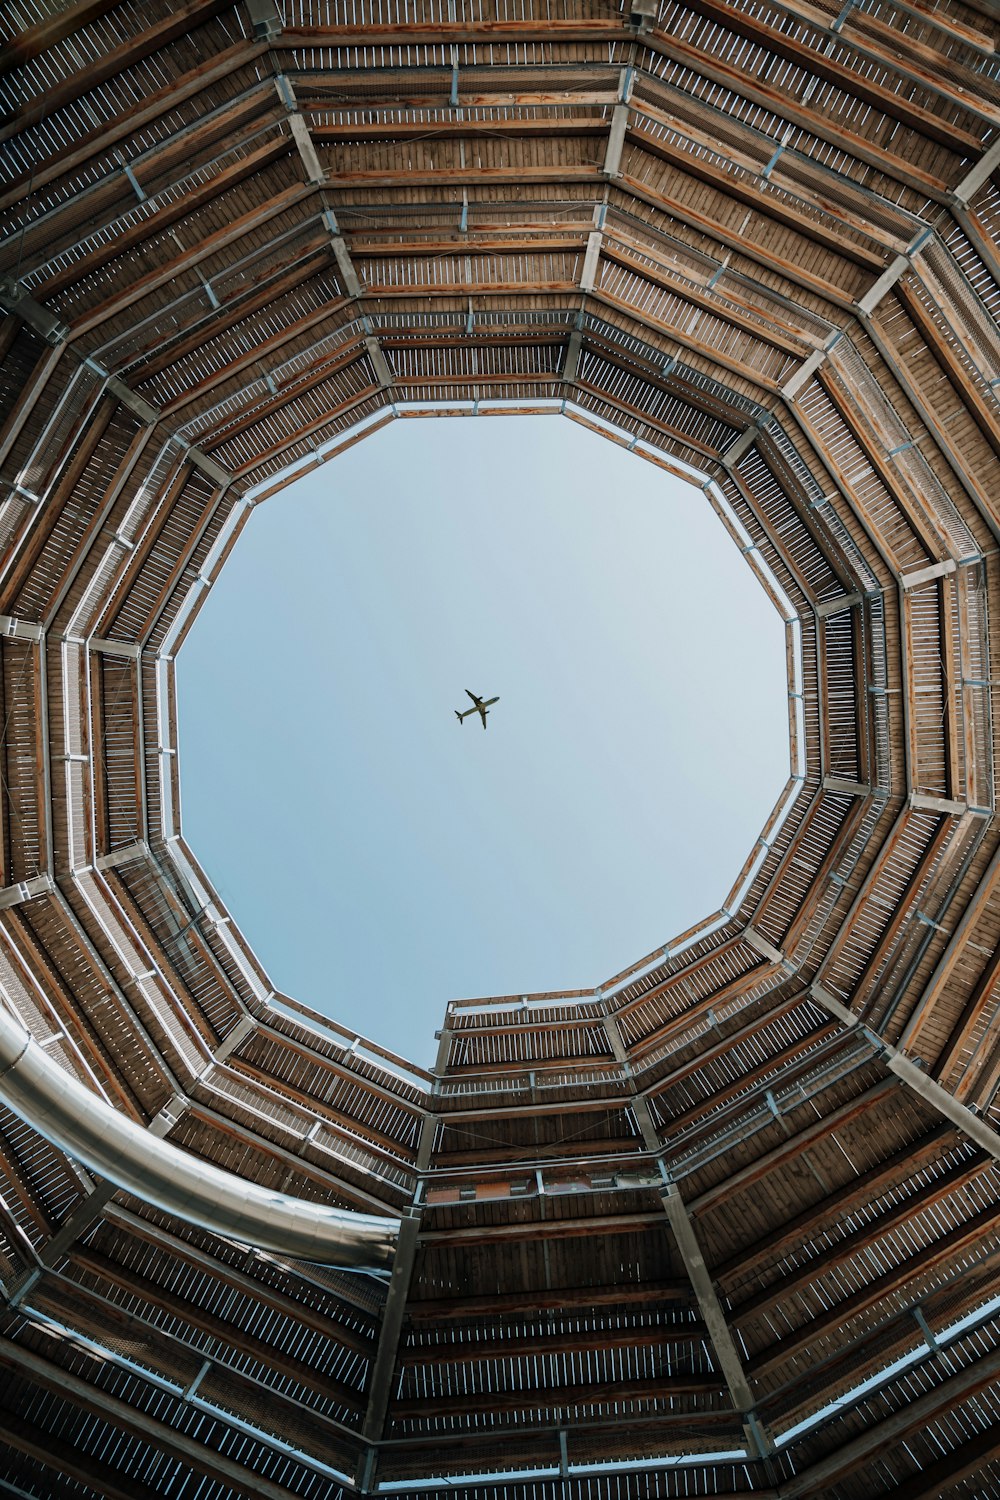 Un avion volant dans le ciel à travers une structure en bois